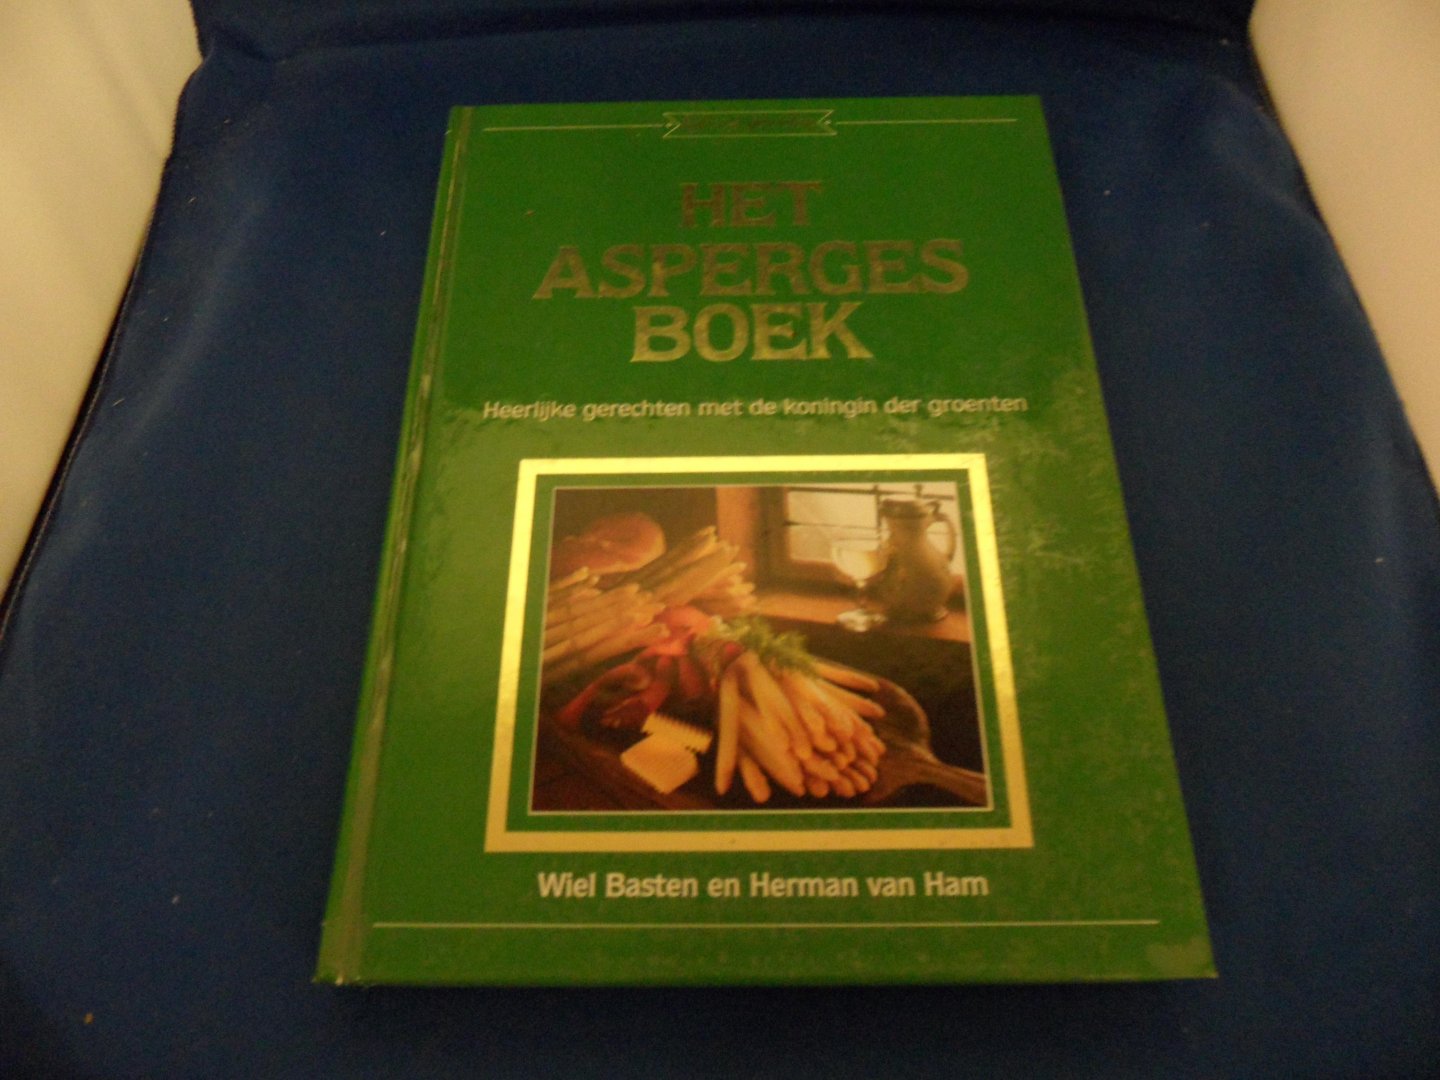 Basten, Wiel en Ham, Herman van - Het aspergesboek. Heerlijke gerechten met de koningin der groenten